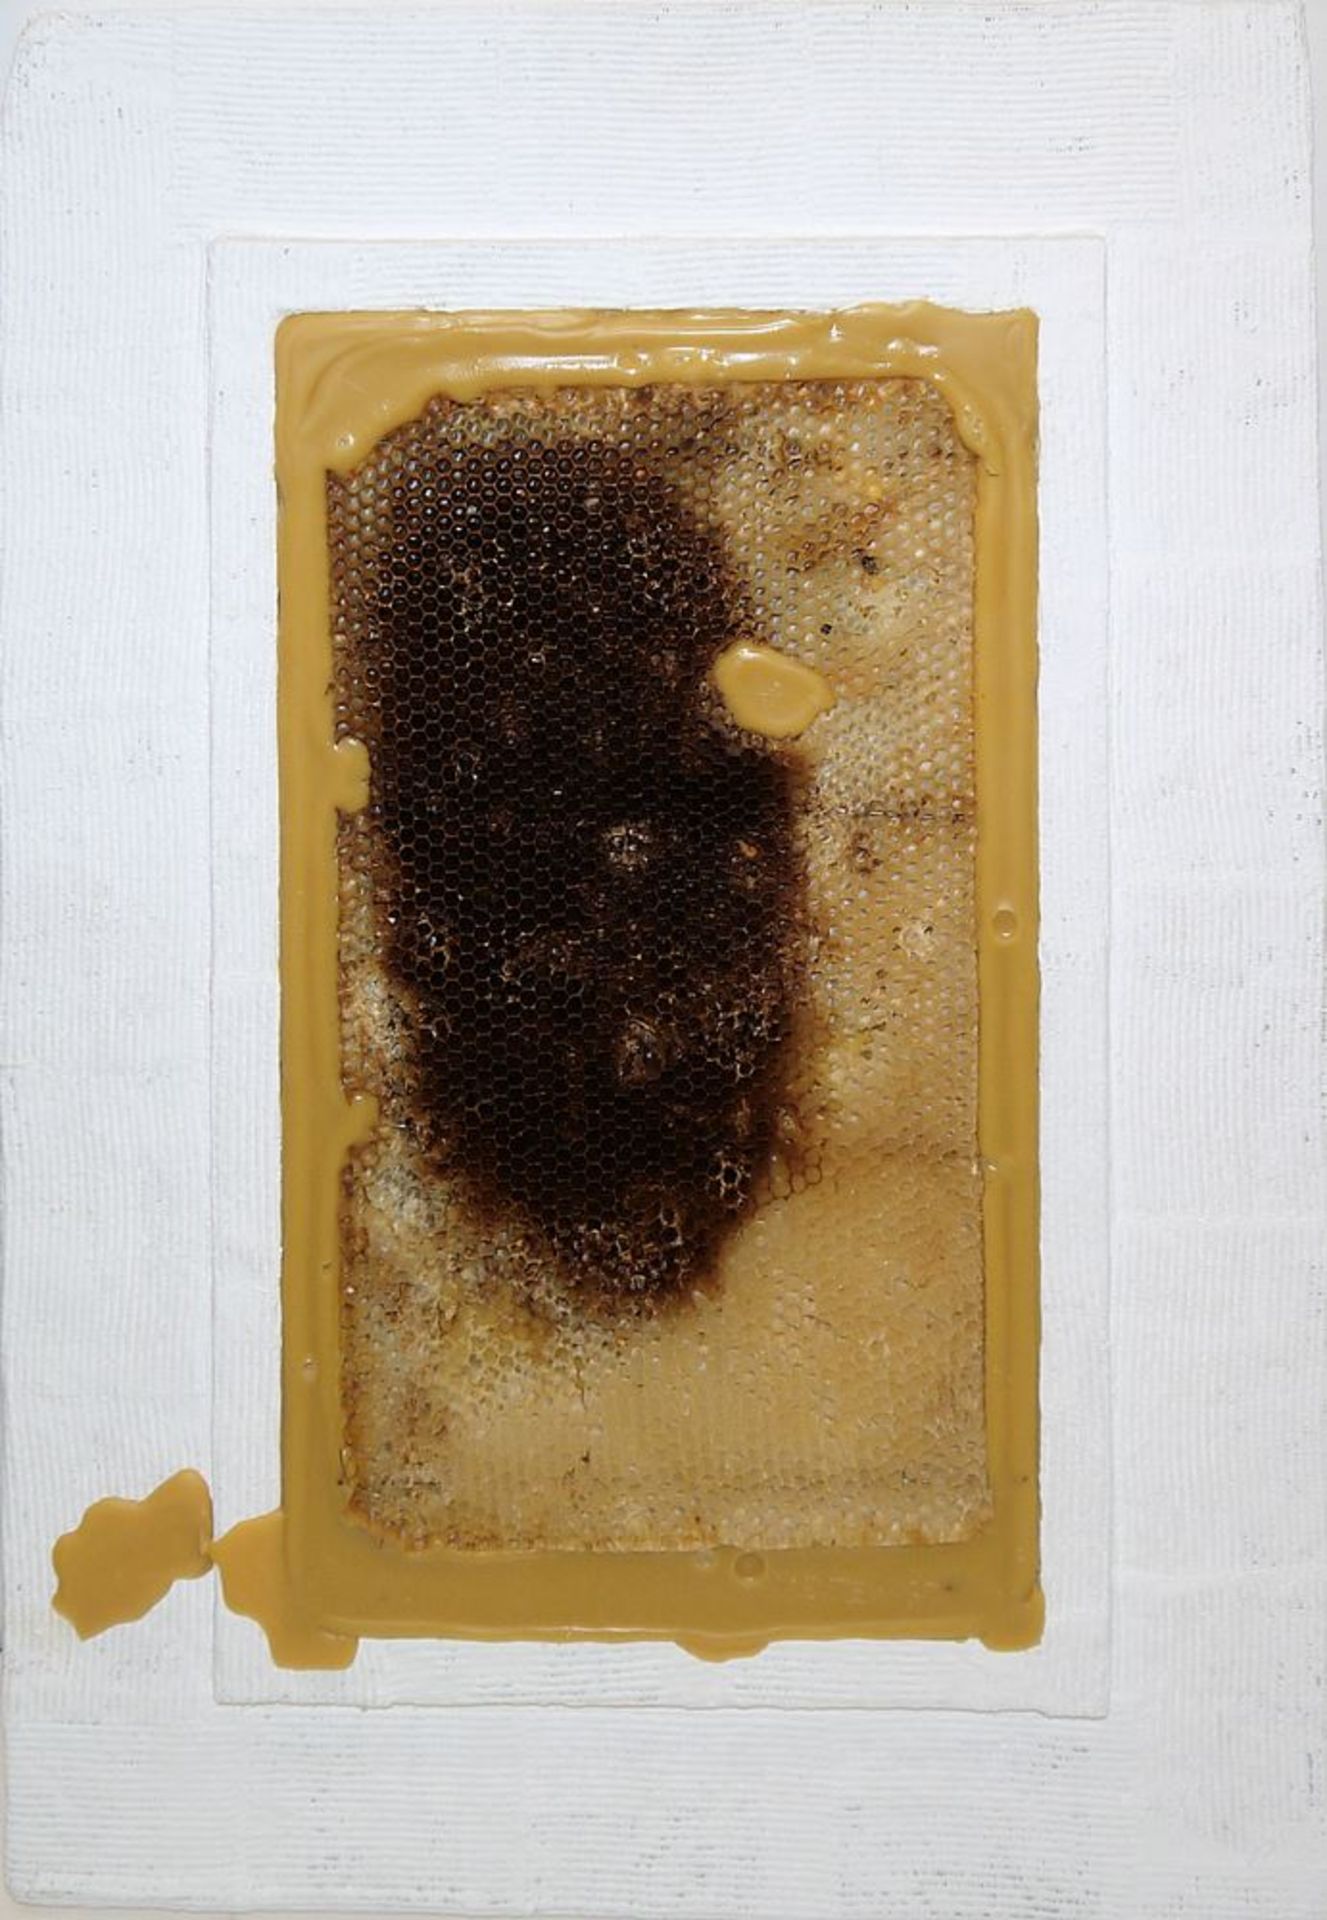 Johannes Metten, "Mutationen in Wachs", 2 signierte Wachs-Reliefs mit Bienenwaben von 1997